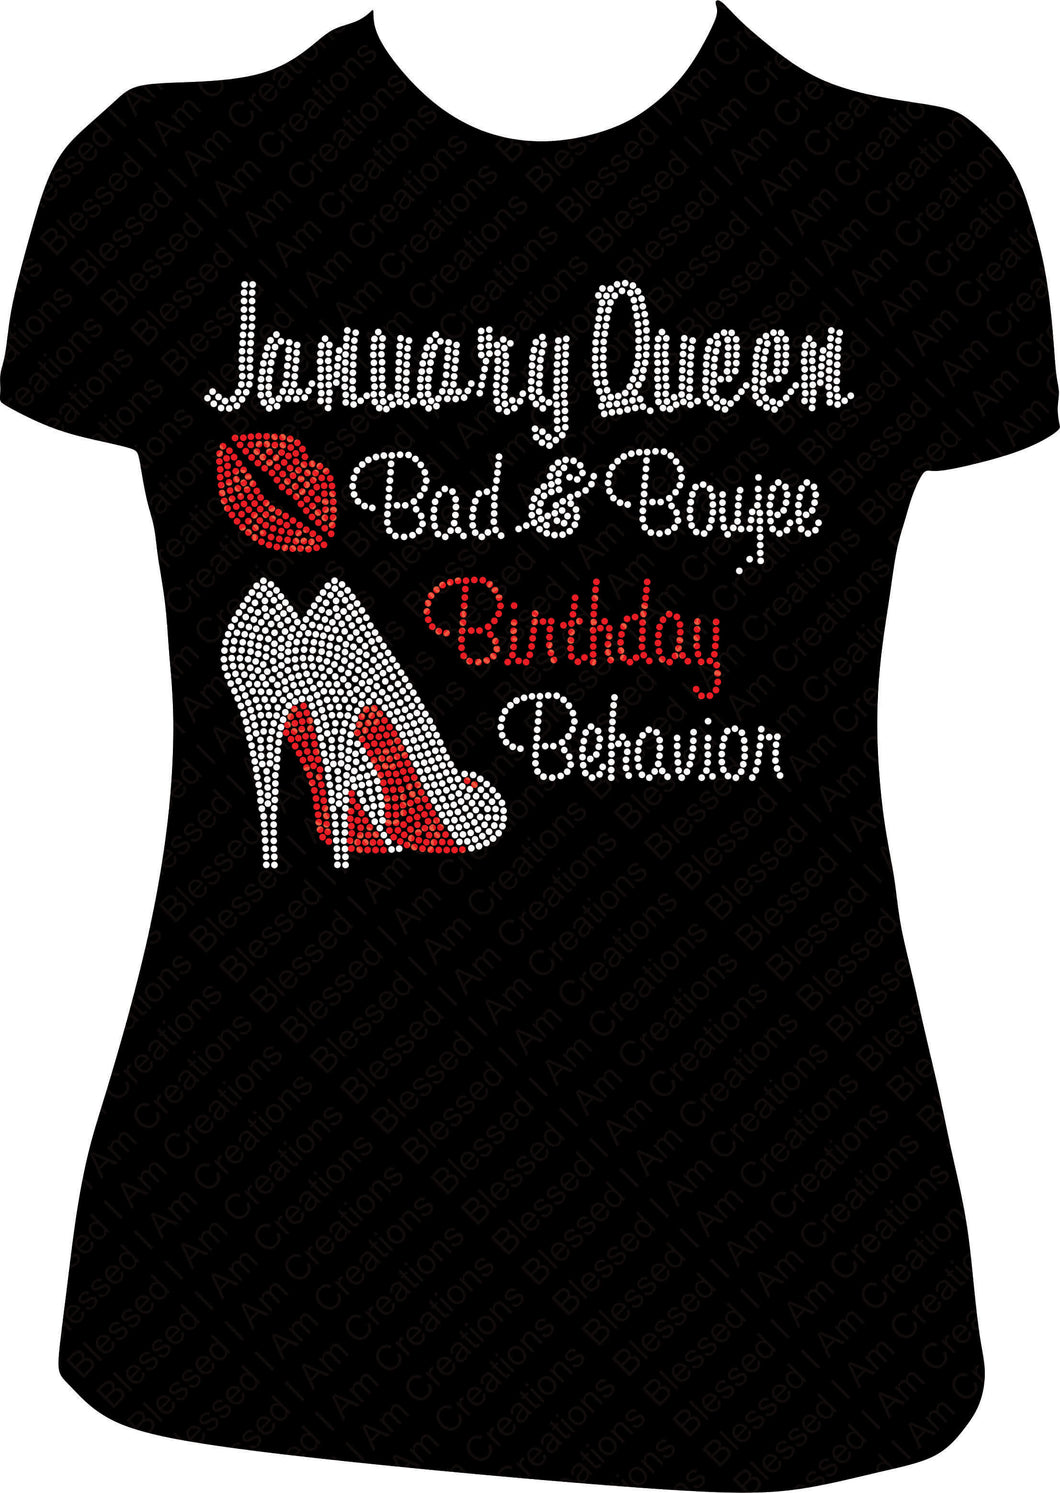 January Queen Bad and Boujee Rhinestone Birthday Shirt